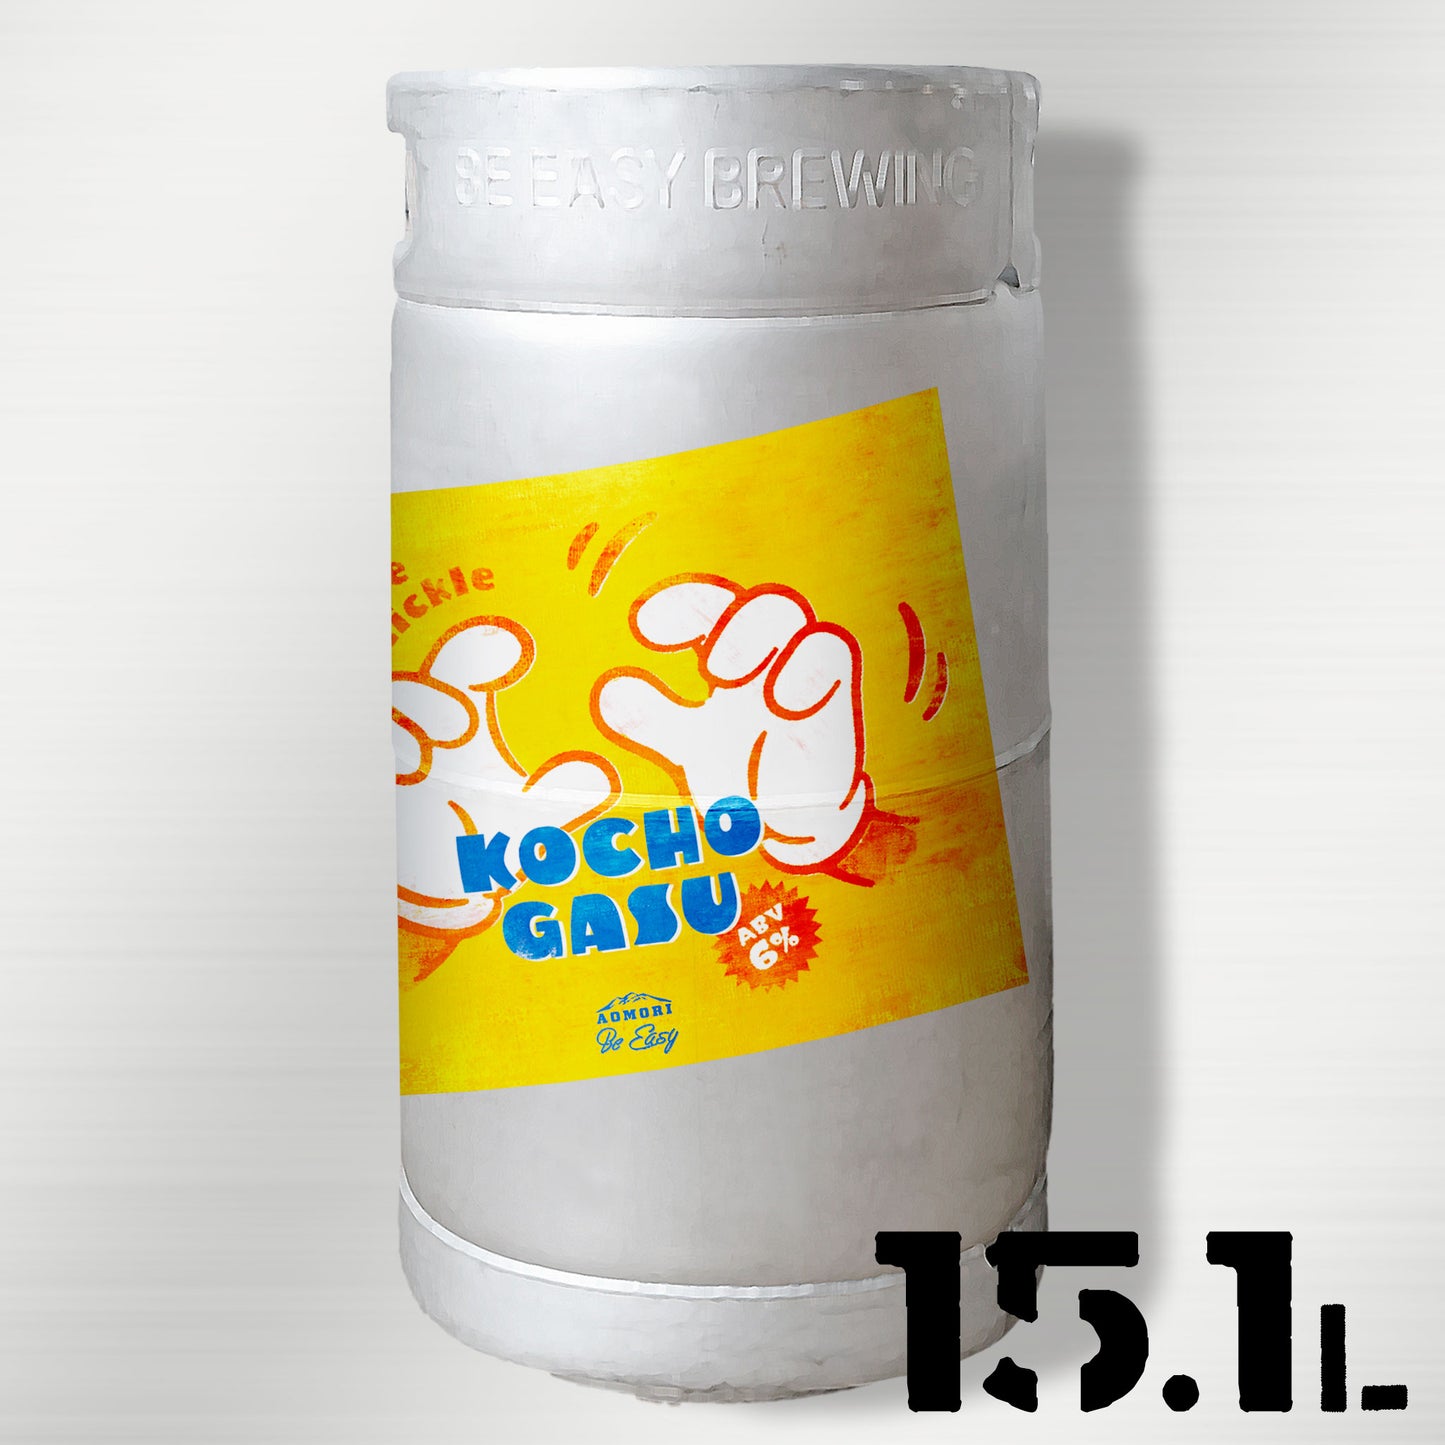 Kochogasu - Hazy IPA with KohiaMotueka Hopkief